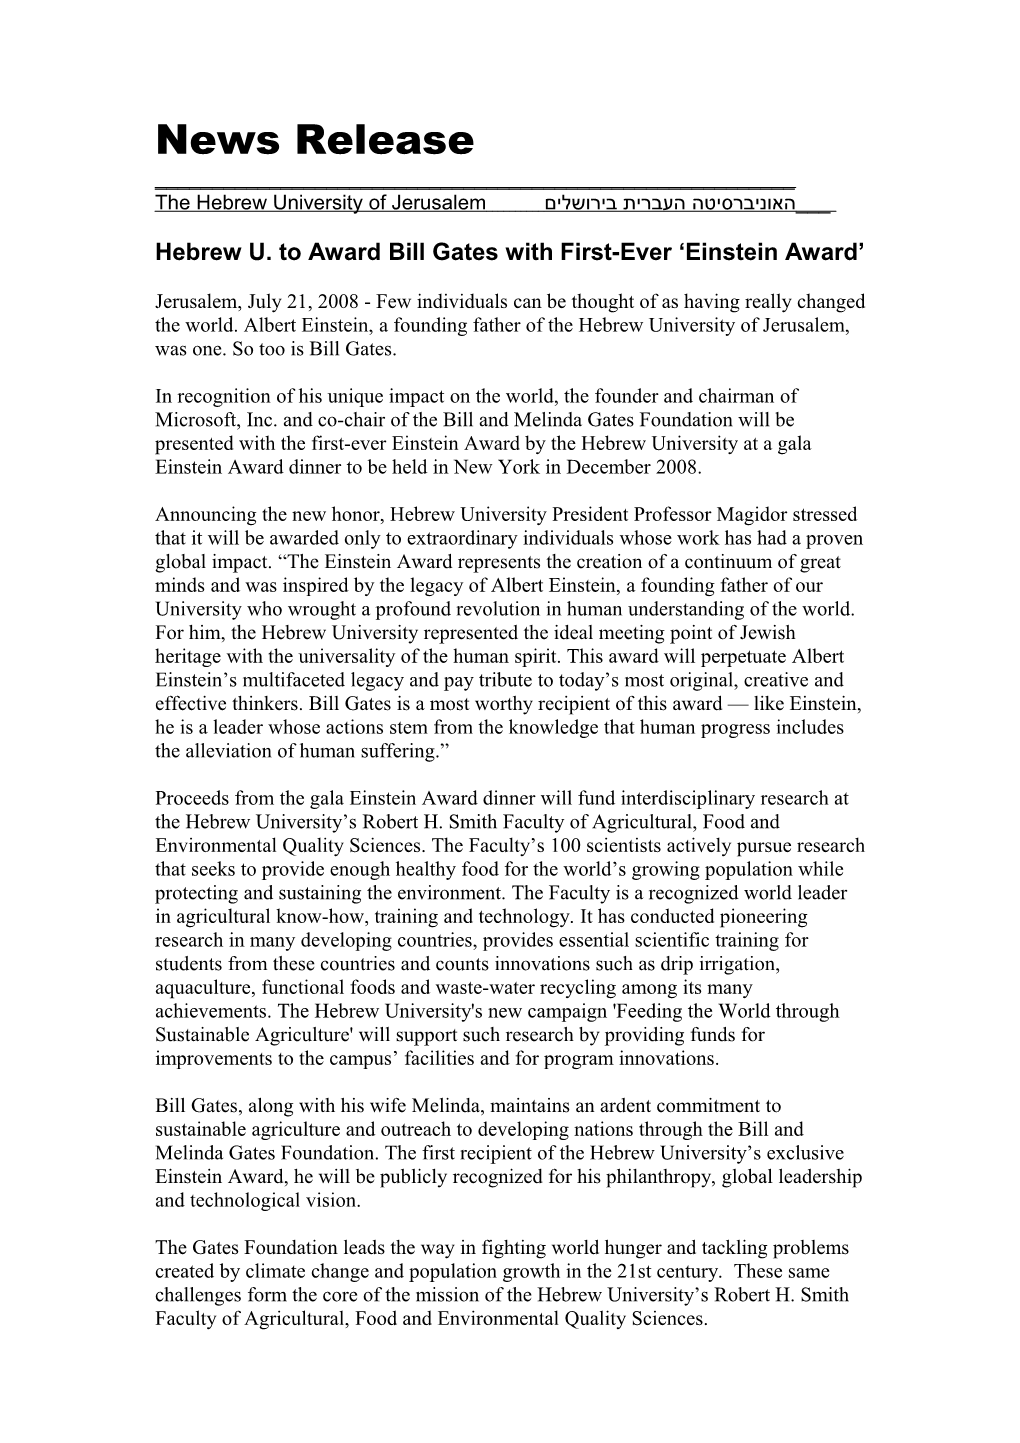 Hebrew University to Award Bill Gates with First-Ever Einstein Award